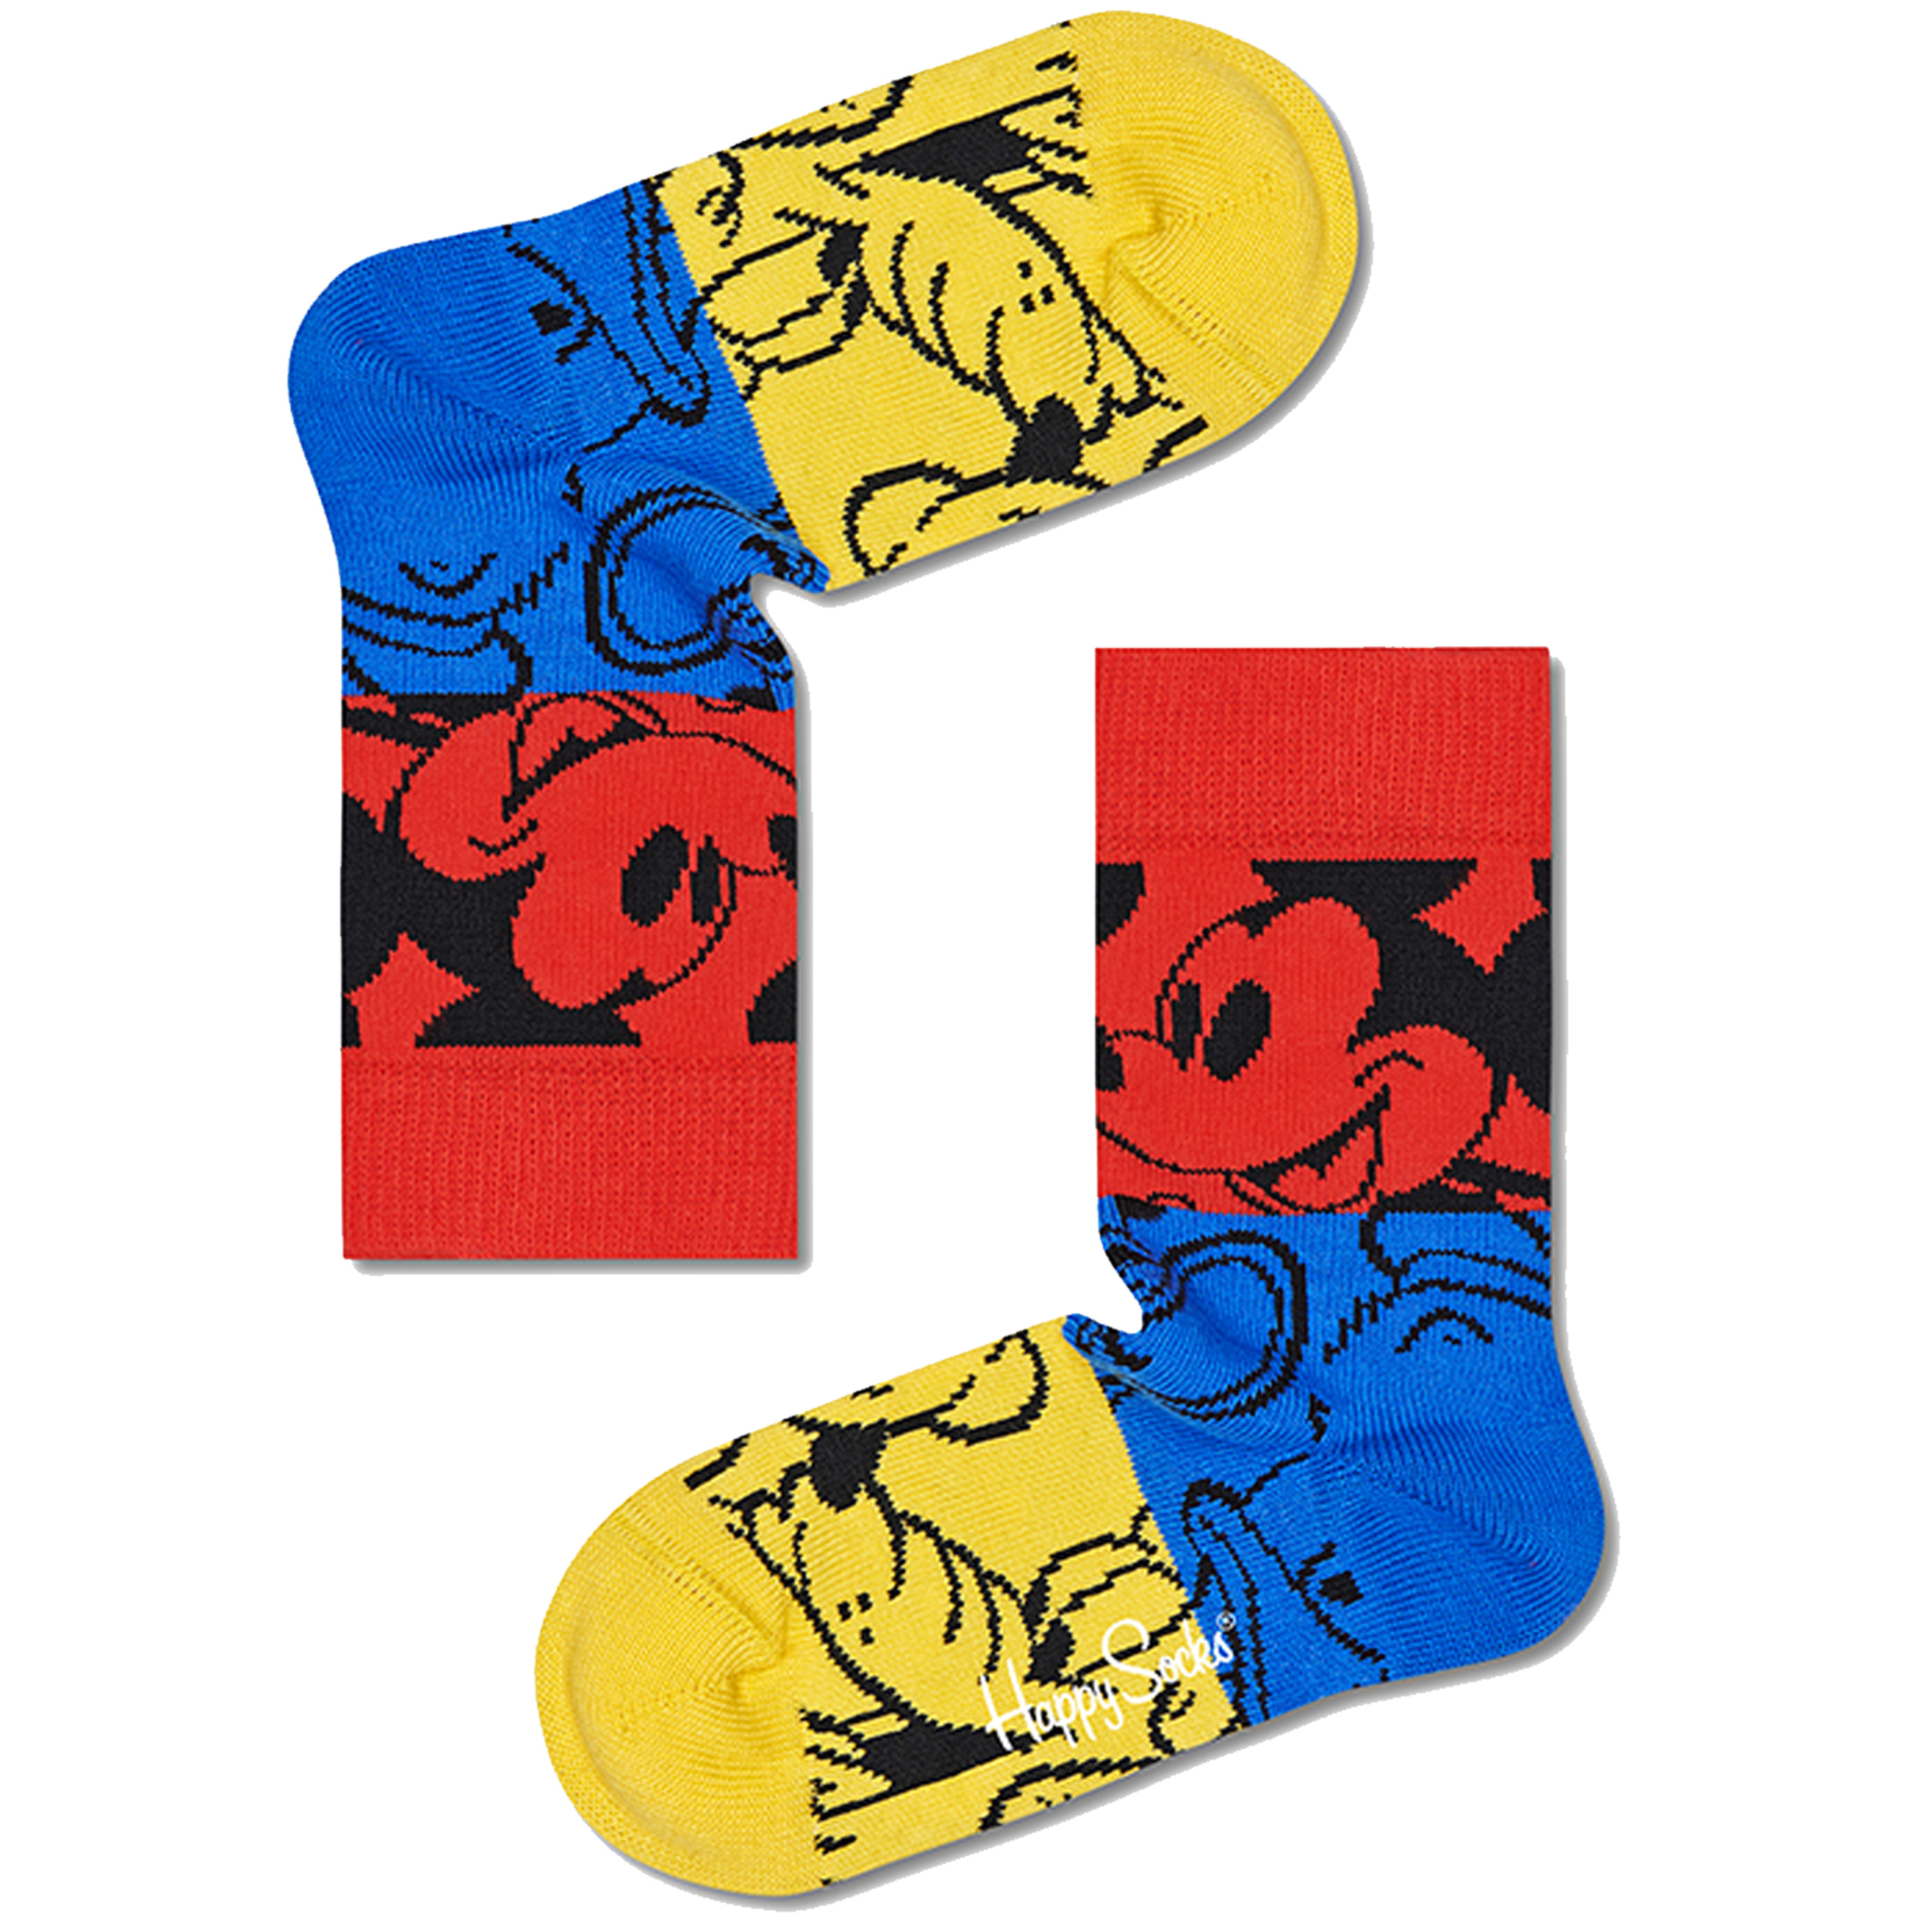 Meias Happy Socks Cherry Mickey - multicolor - 